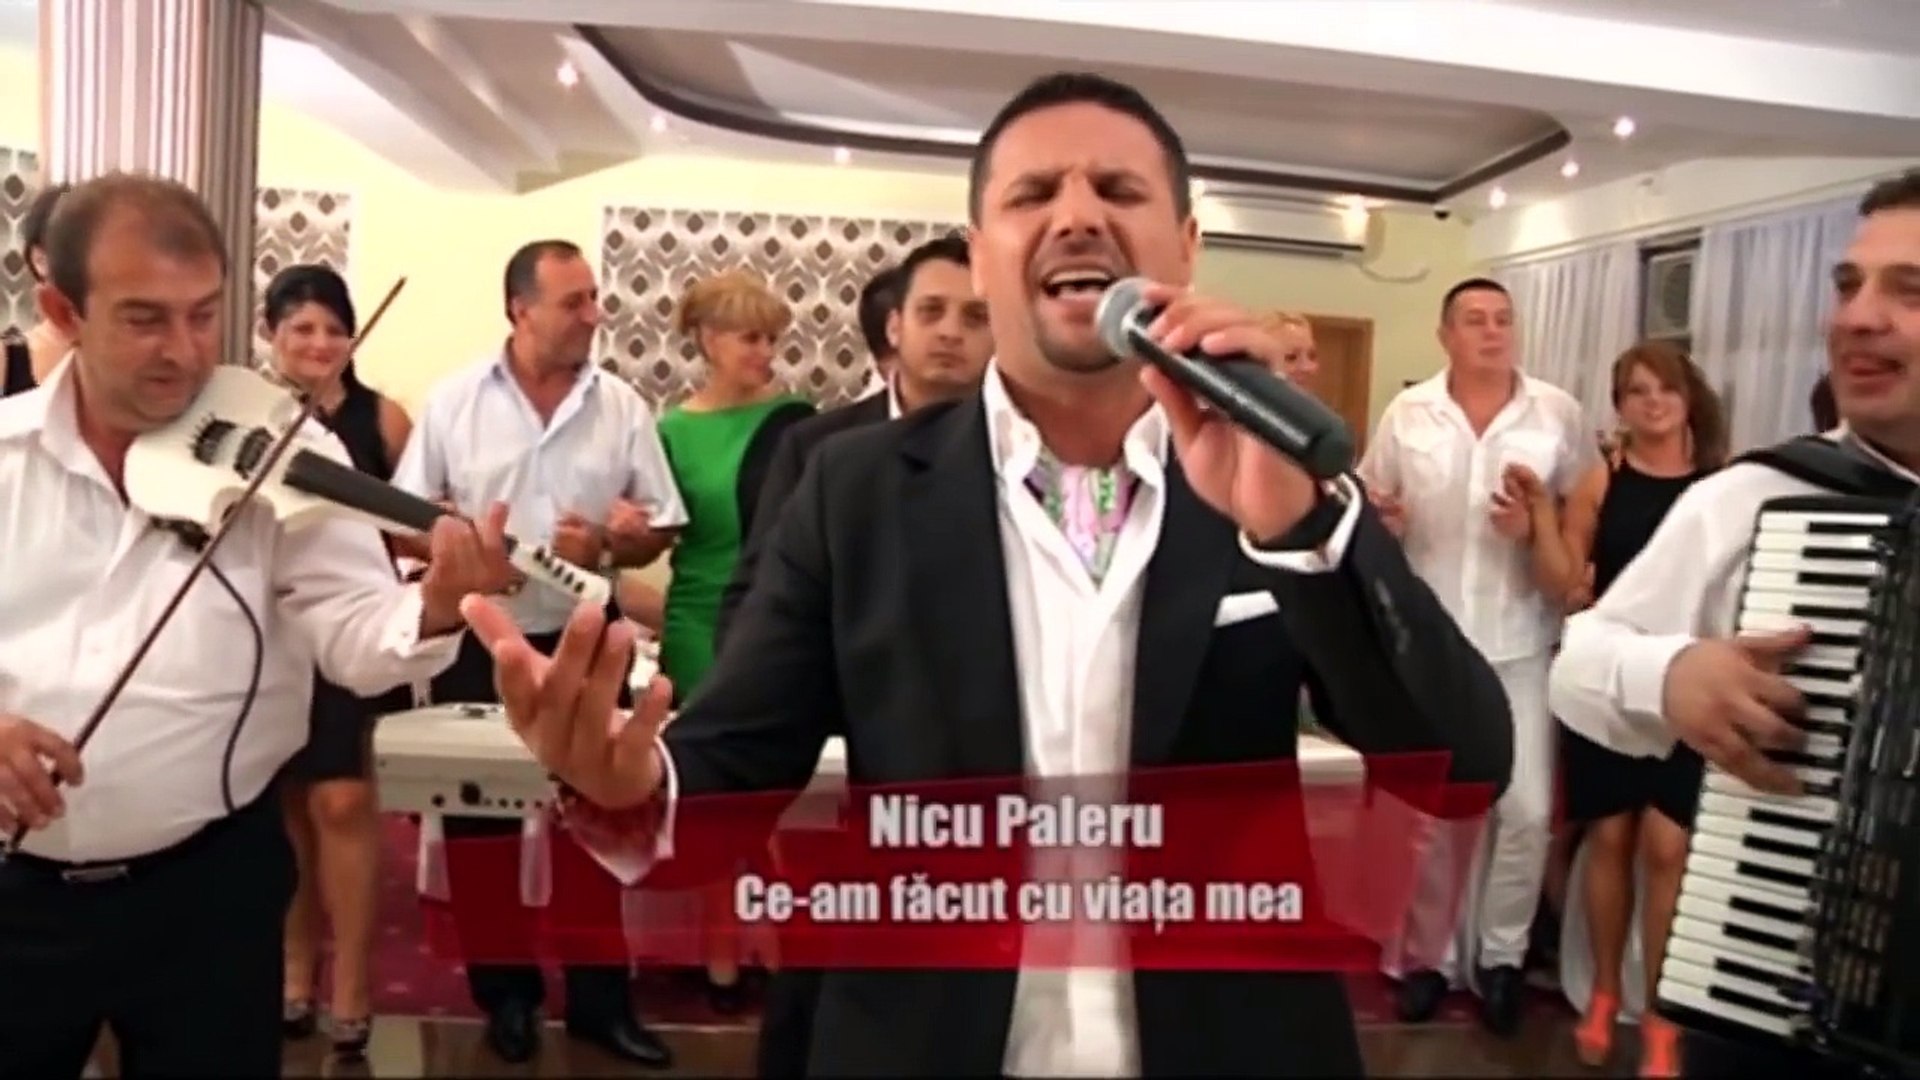 Nicu Paleru - Ce-am facut cu viata mea 2012 - video Dailymotion